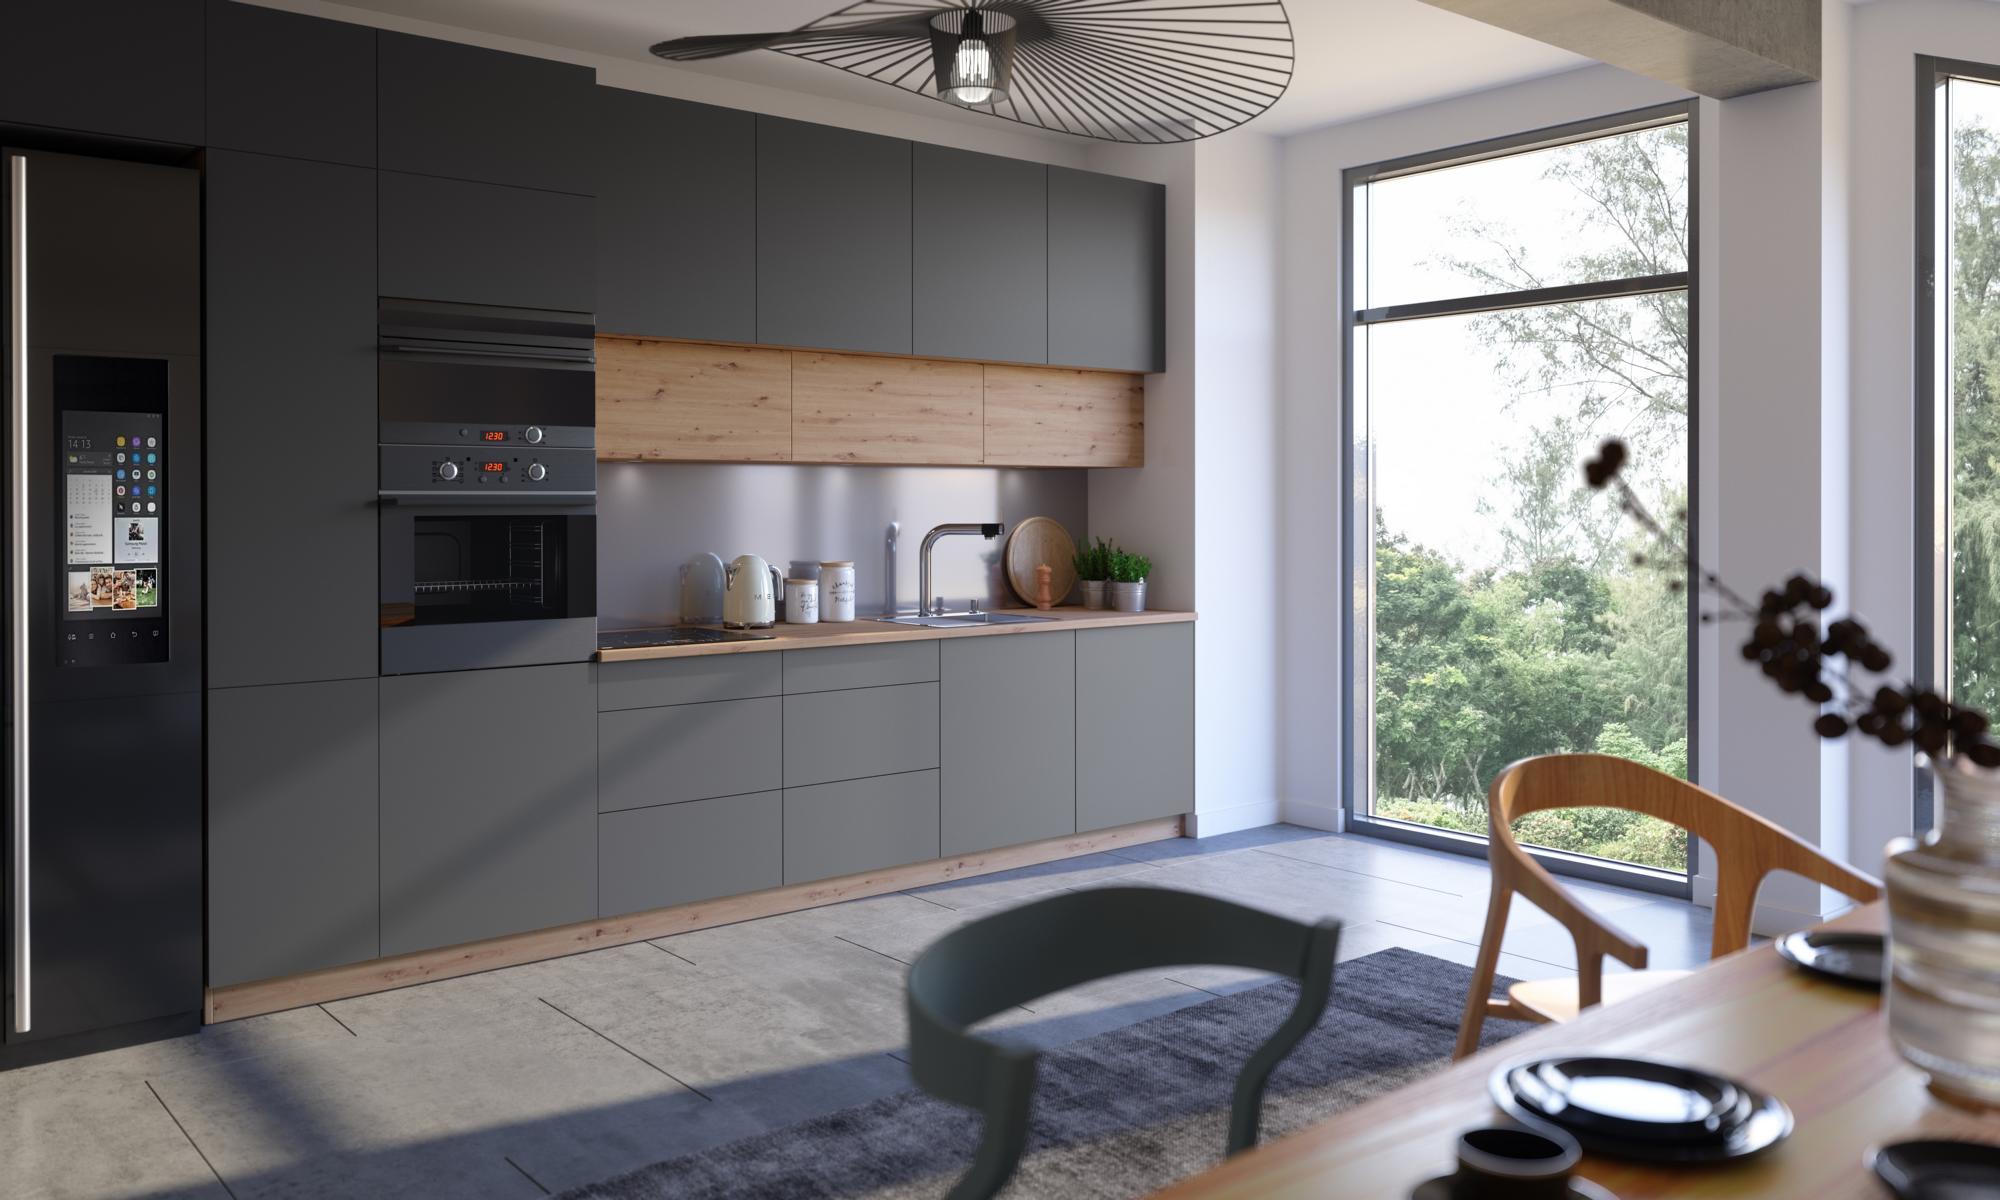 Modern Kitchen Line Kitchen Cabinet Design Furniture Made to Measure Kitchen Unit Grey